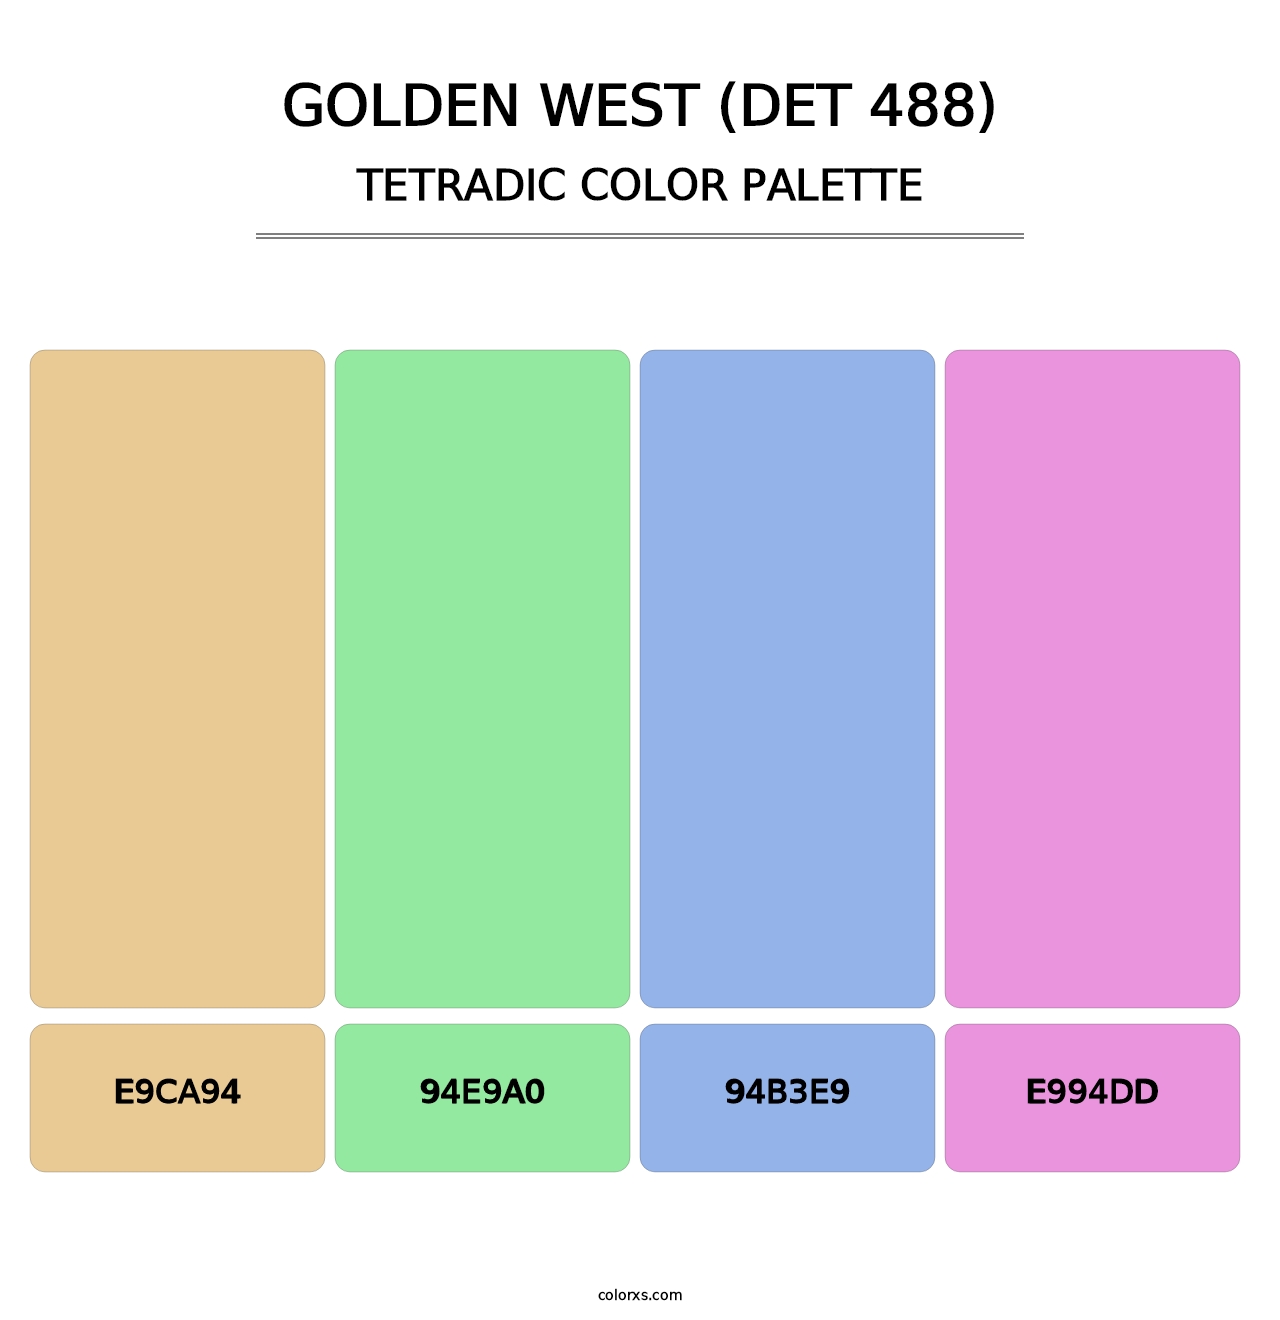 Golden West (DET 488) - Tetradic Color Palette